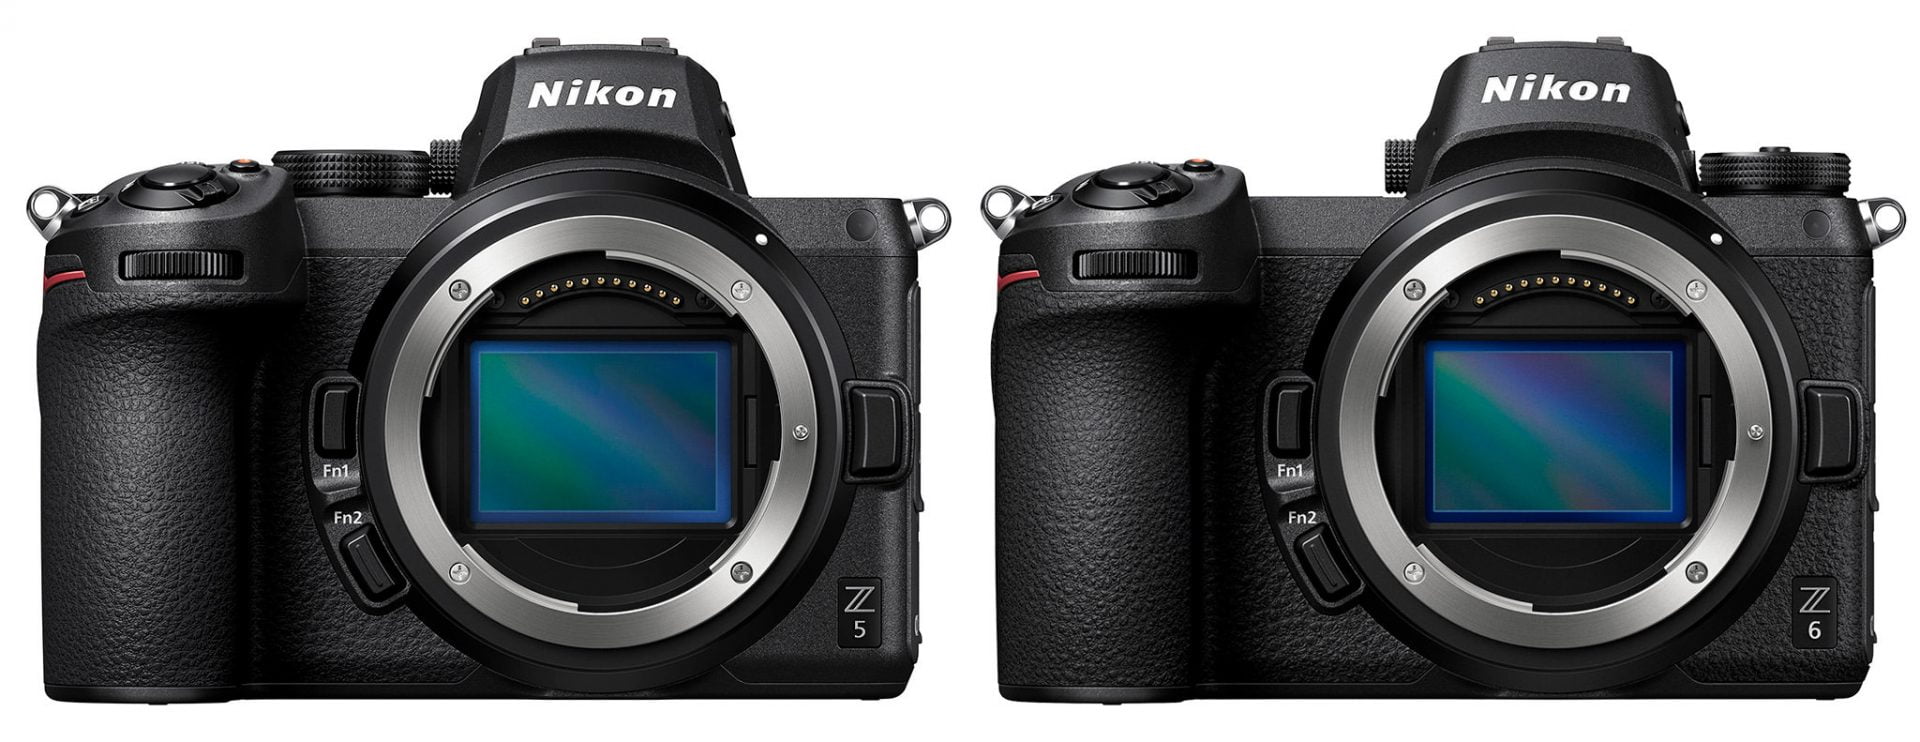 Nikon Z5 vs Z6